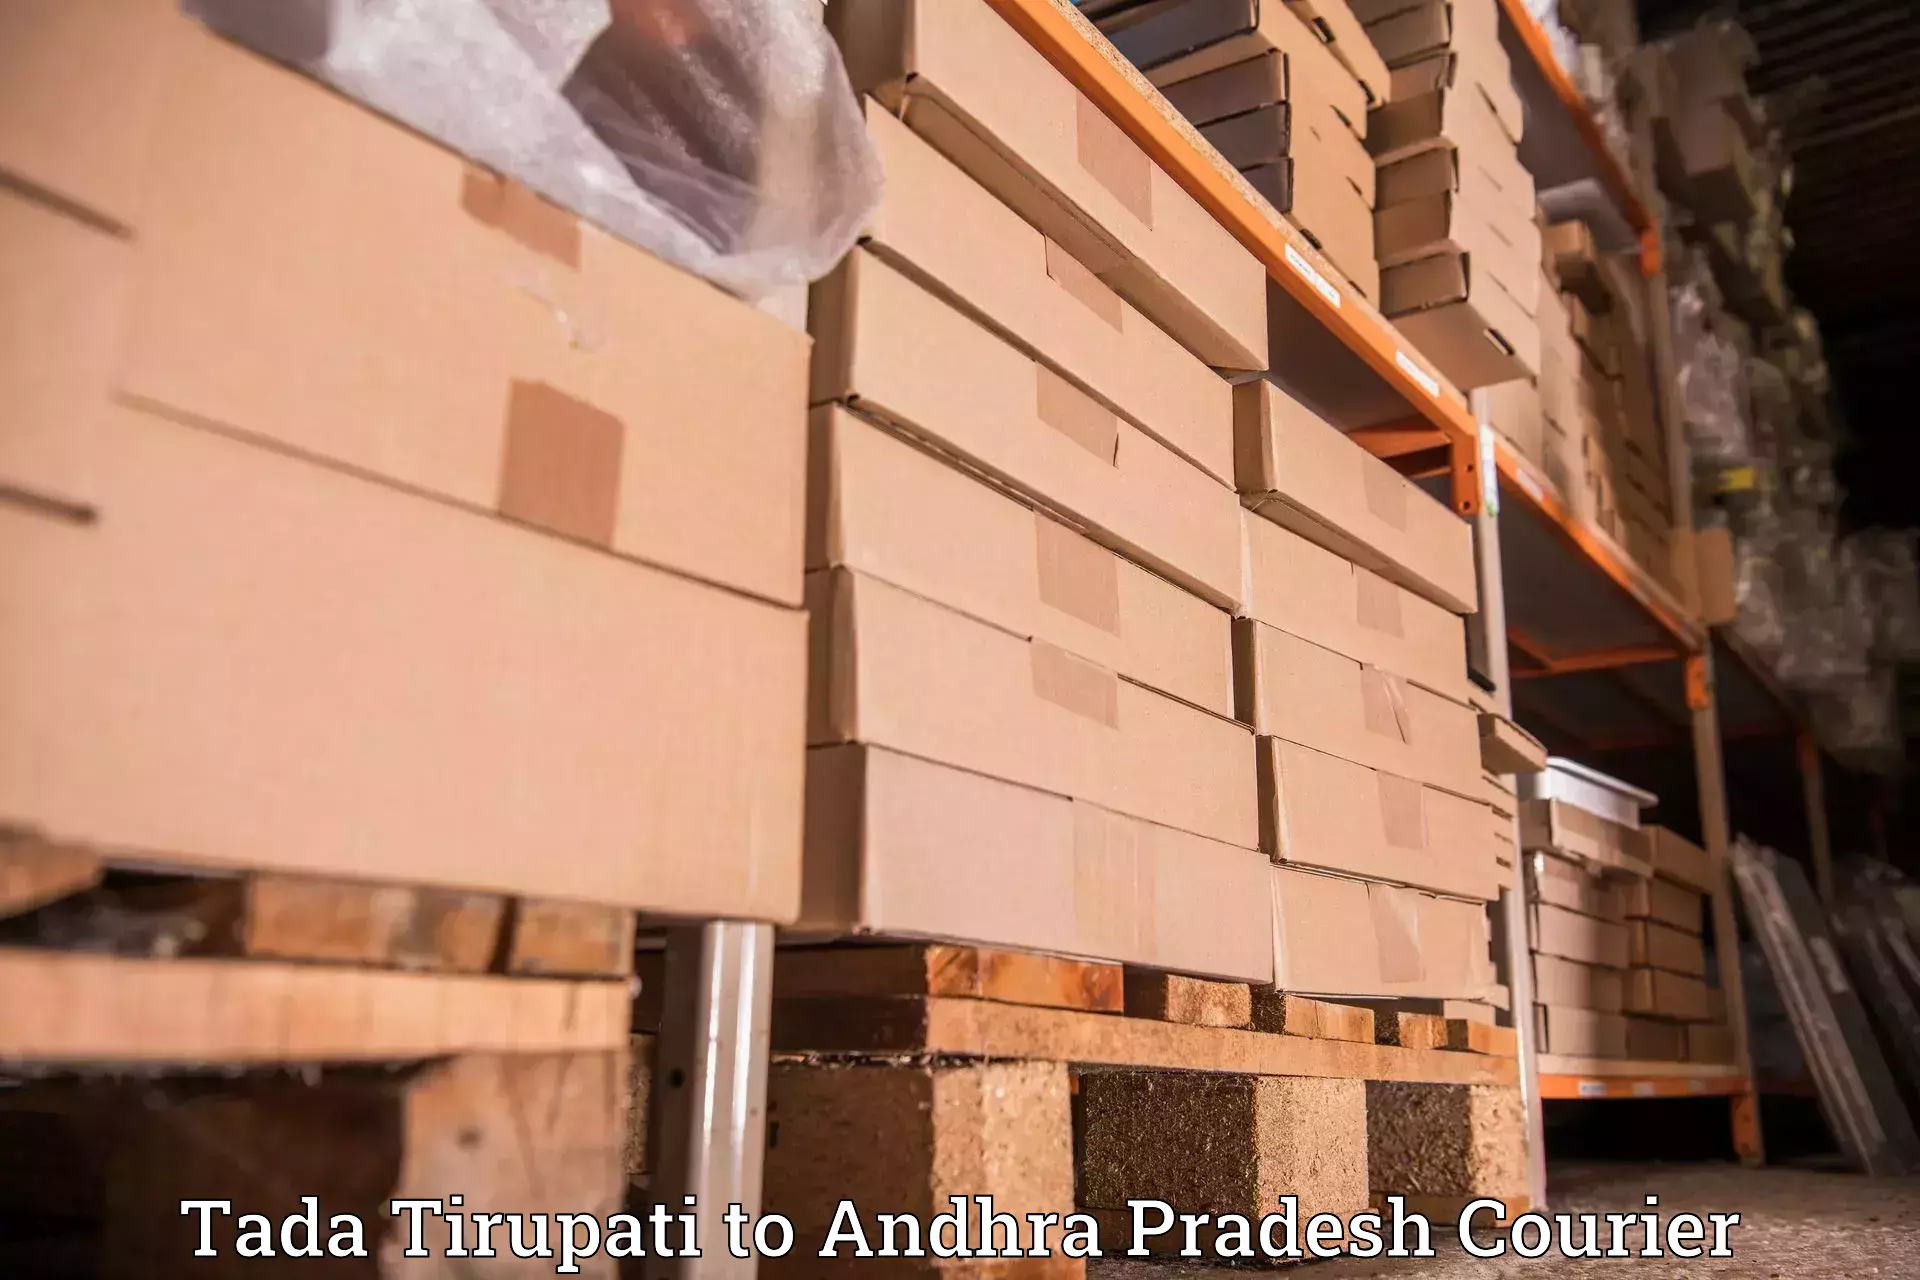 Efficient parcel service Tada Tirupati to Kudair